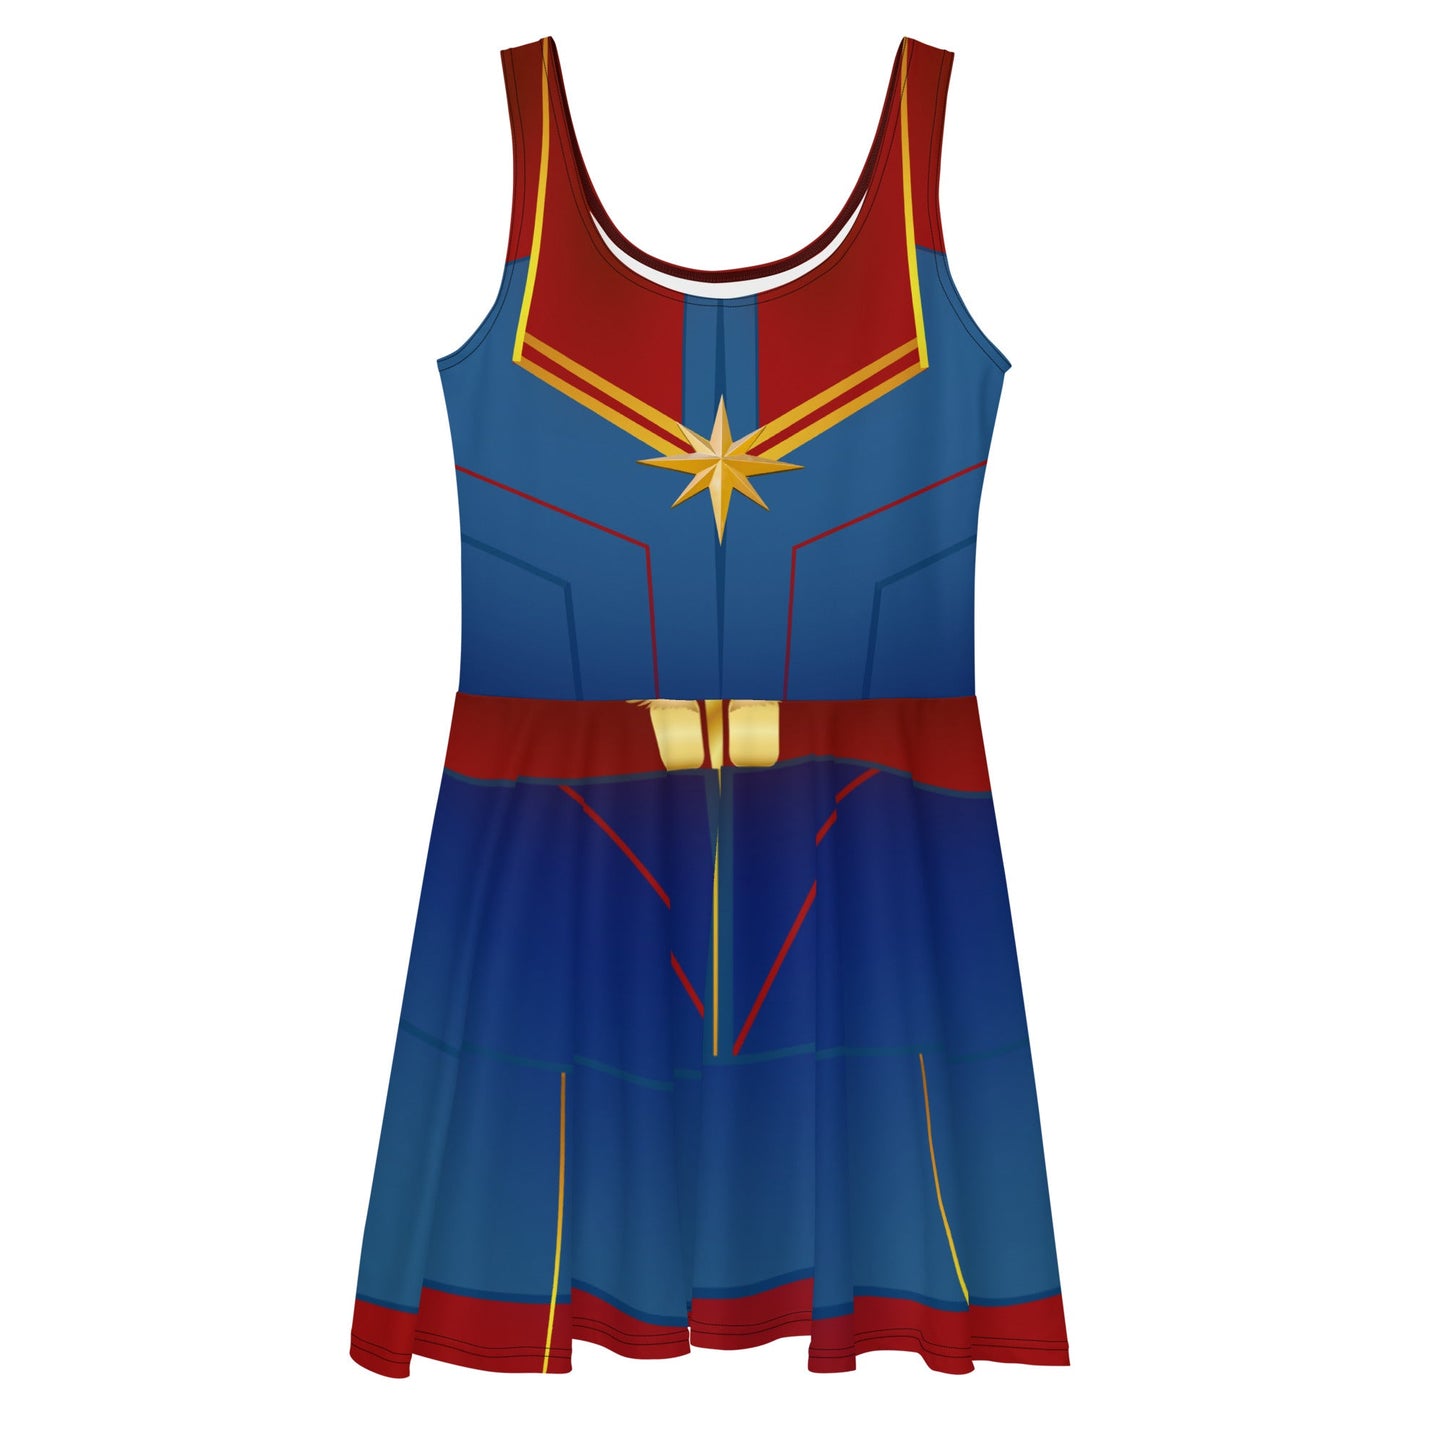 The Marvel Captain Skater Dress- Disneybounding, cosplay, running style avengers dresscaptain marvelSkater DressWrong Lever Clothing